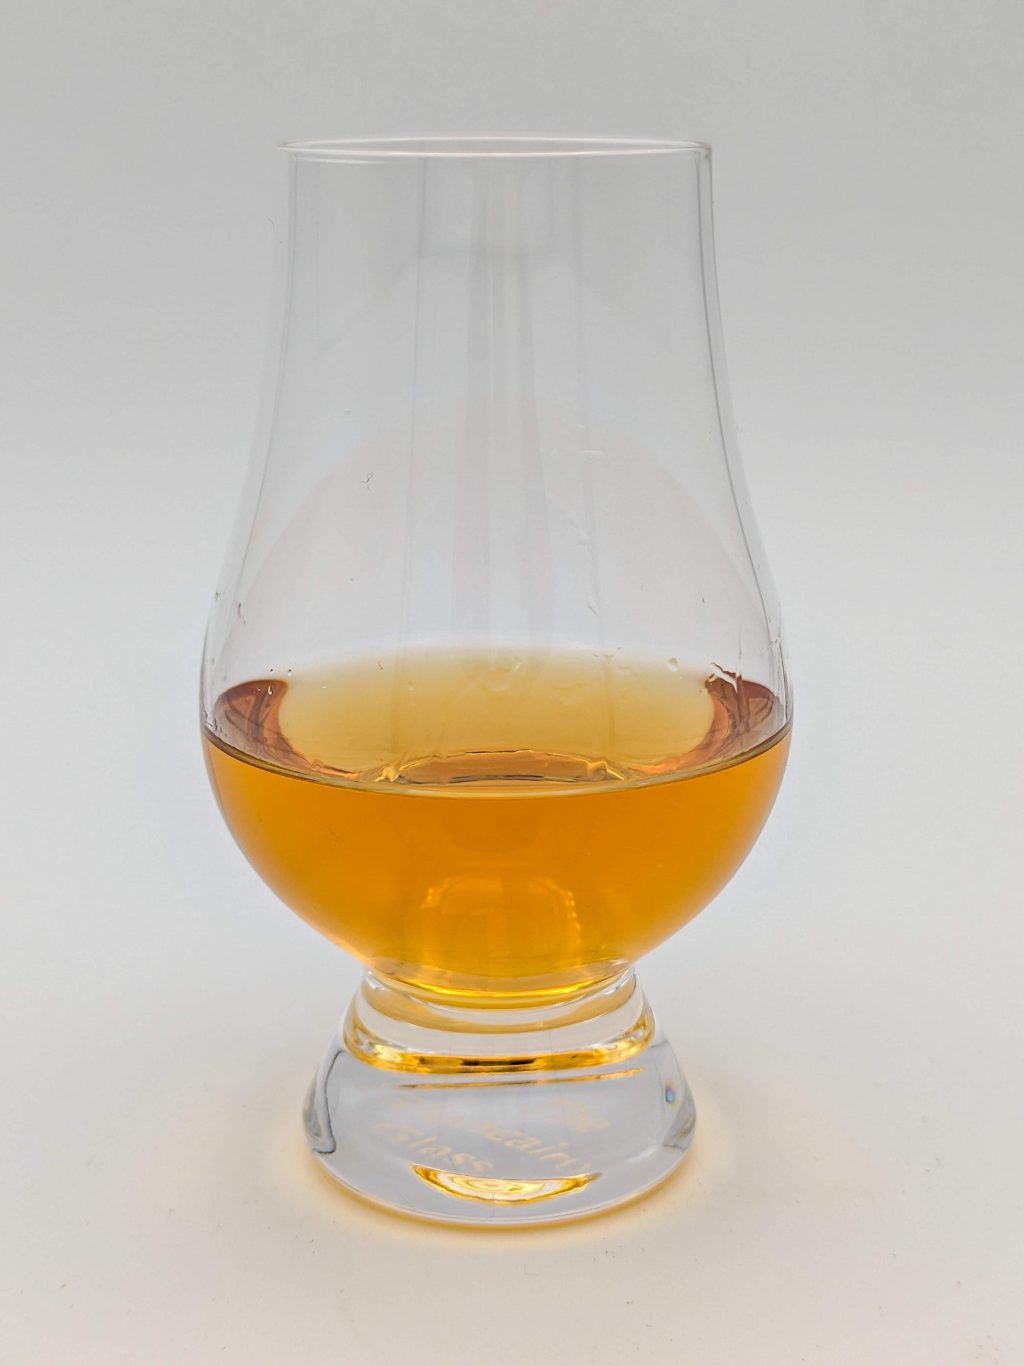 golden brown liquid in a glencairn glass